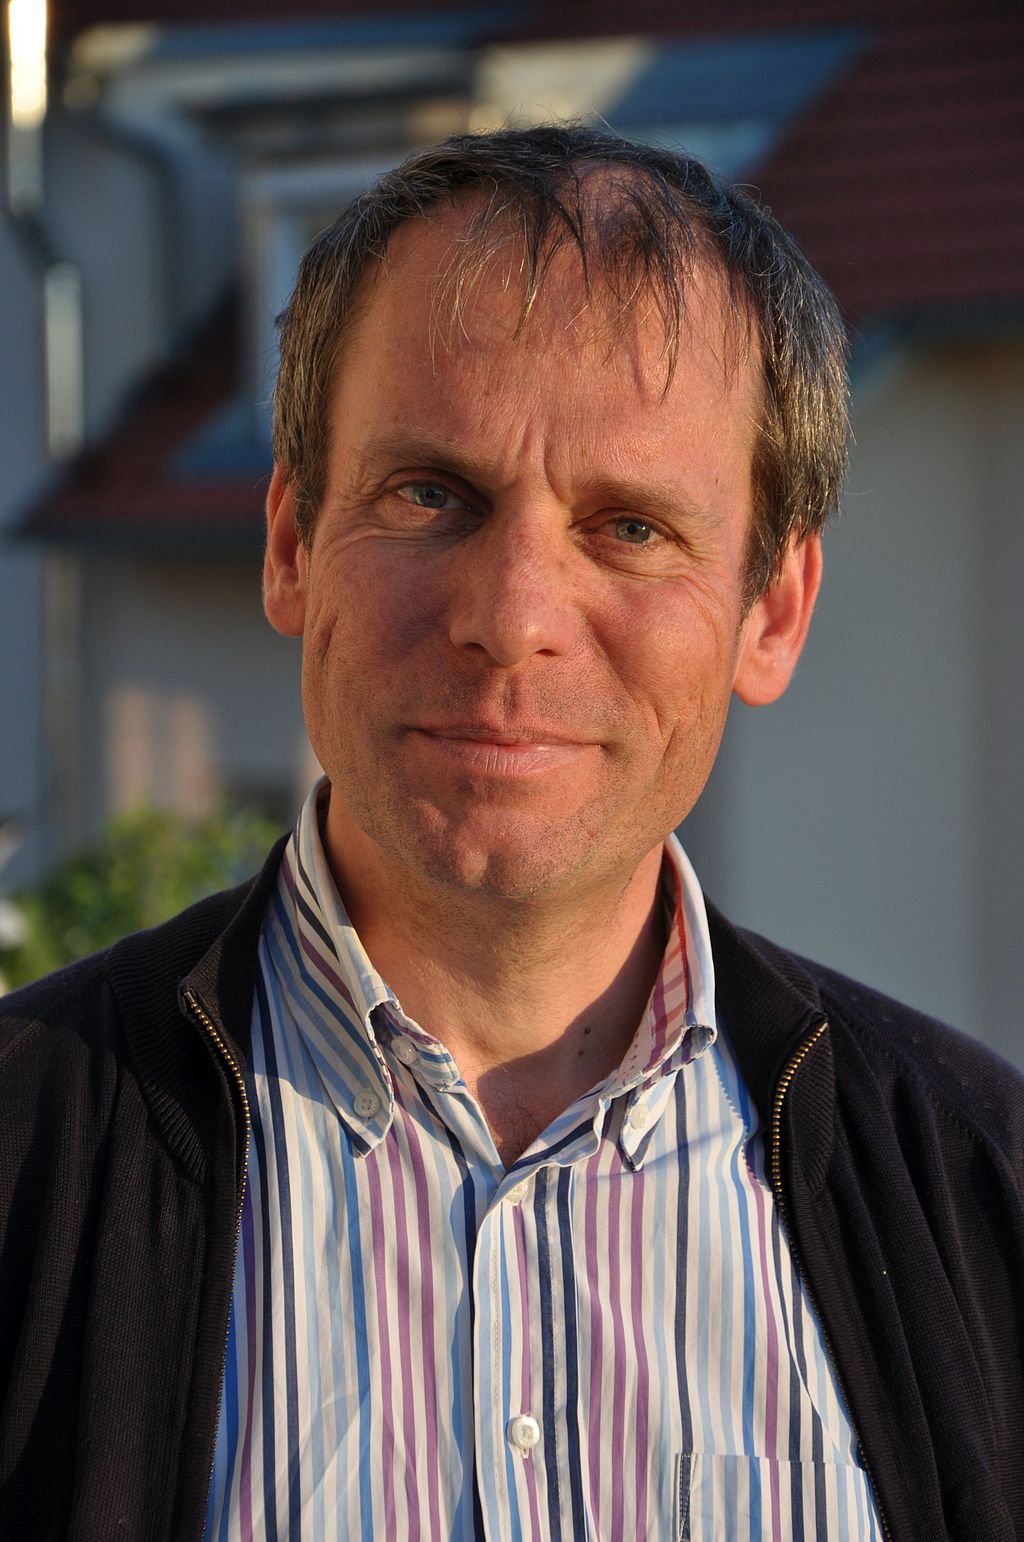 Bernd Fitzenberger, PhD